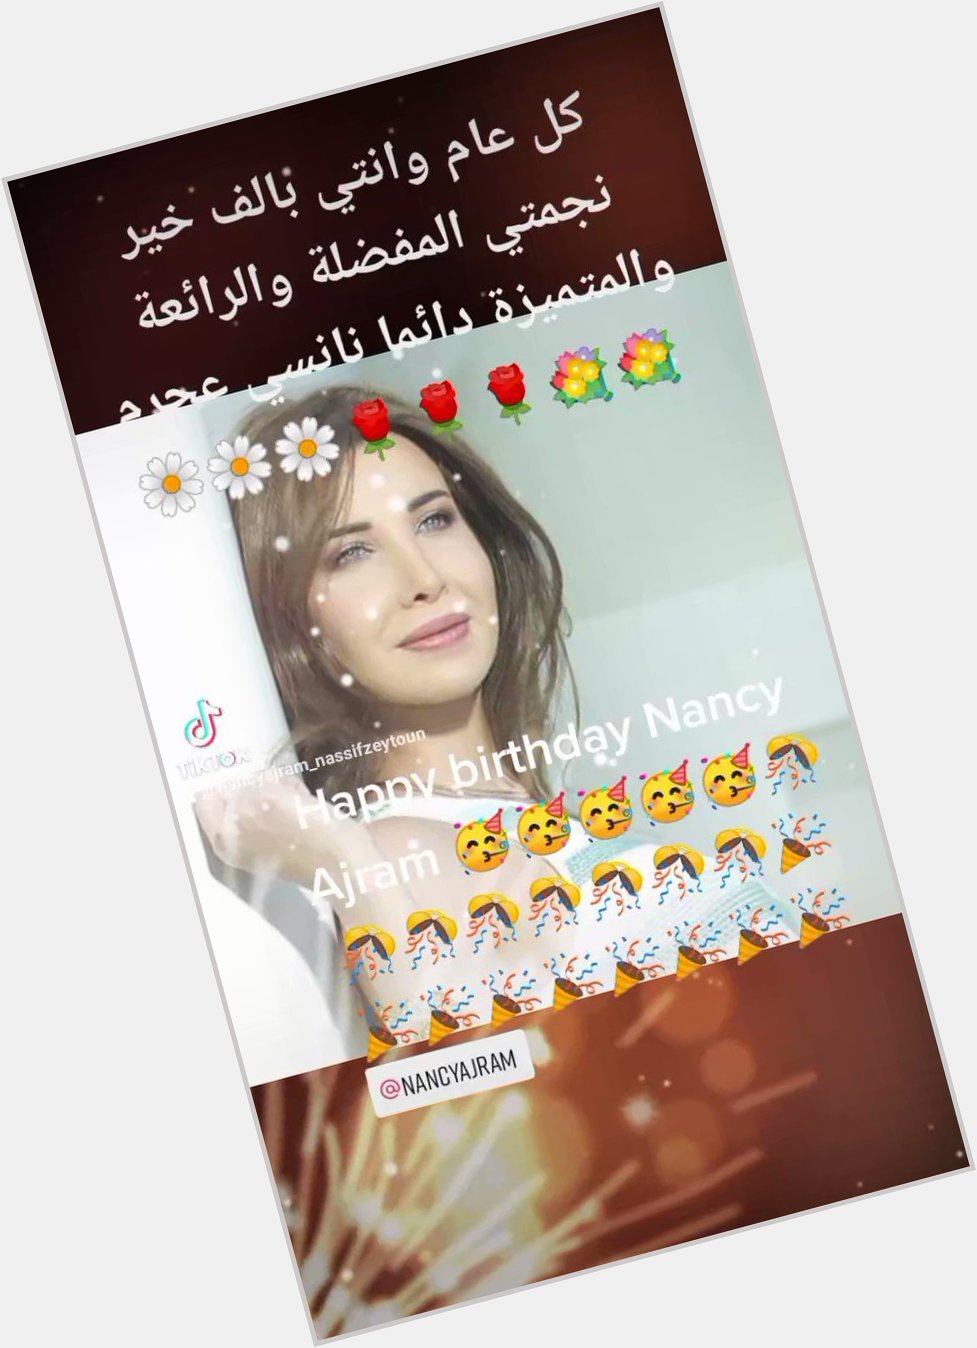 Happy birthday Nancy Ajram                  